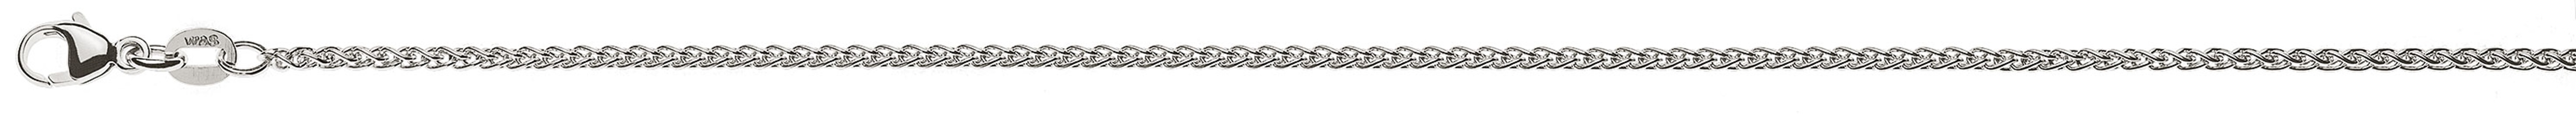 AURONOS Prestige Necklace white gold 18K cable chain 42cm 1.65mm